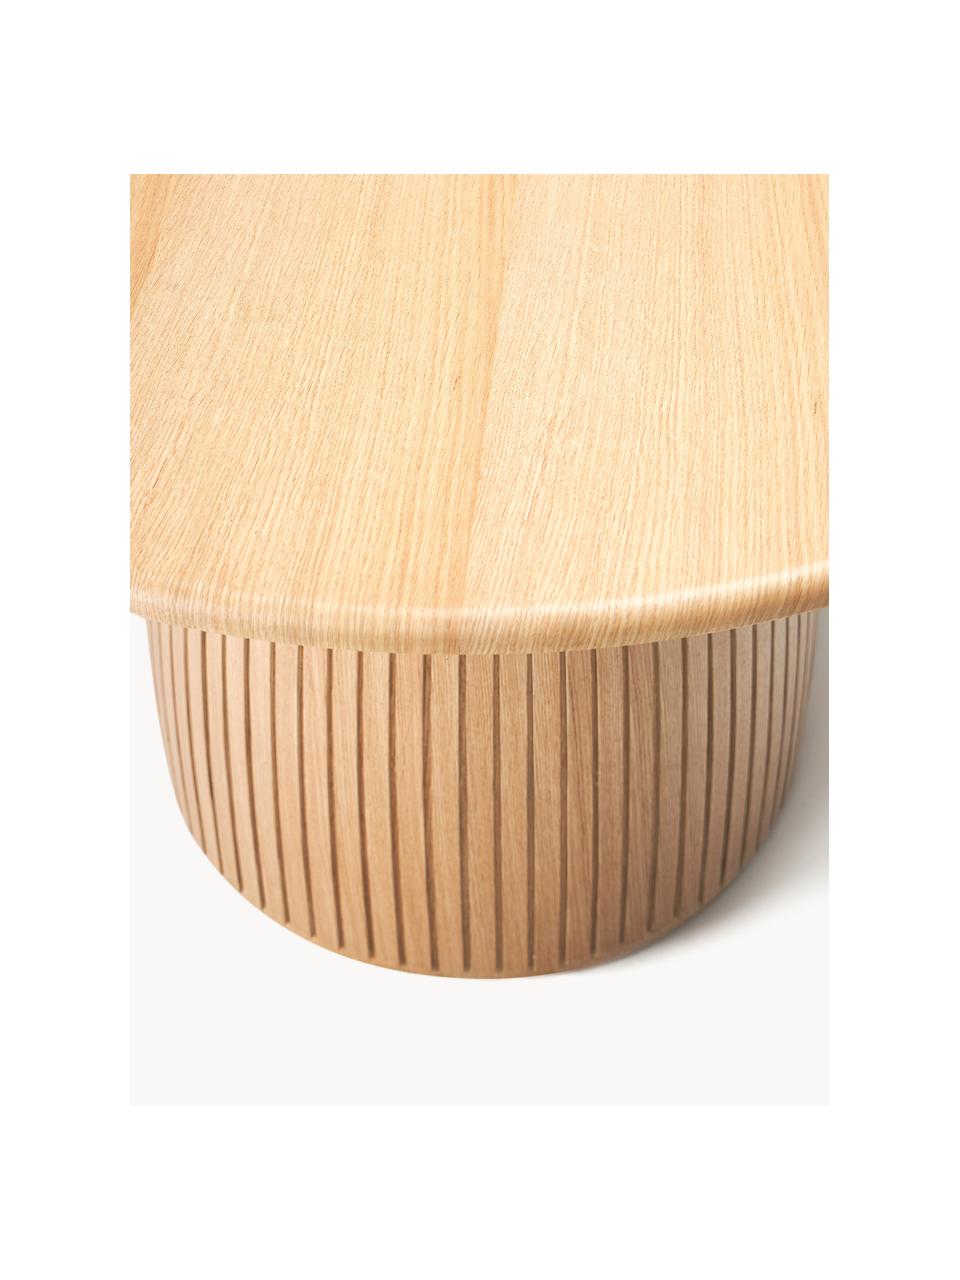 Runder Esstisch Nelly mit Rillenstruktur, in verschiedenen Größen, Eichenholzfurnier, mit Mitteldichte Holzfaserplatte (MDF)

Dieses Produkt wird aus nachhaltig gewonnenem, FSC®-zertifiziertem Holz gefertigt., Eichenholz, Ø 140 cm